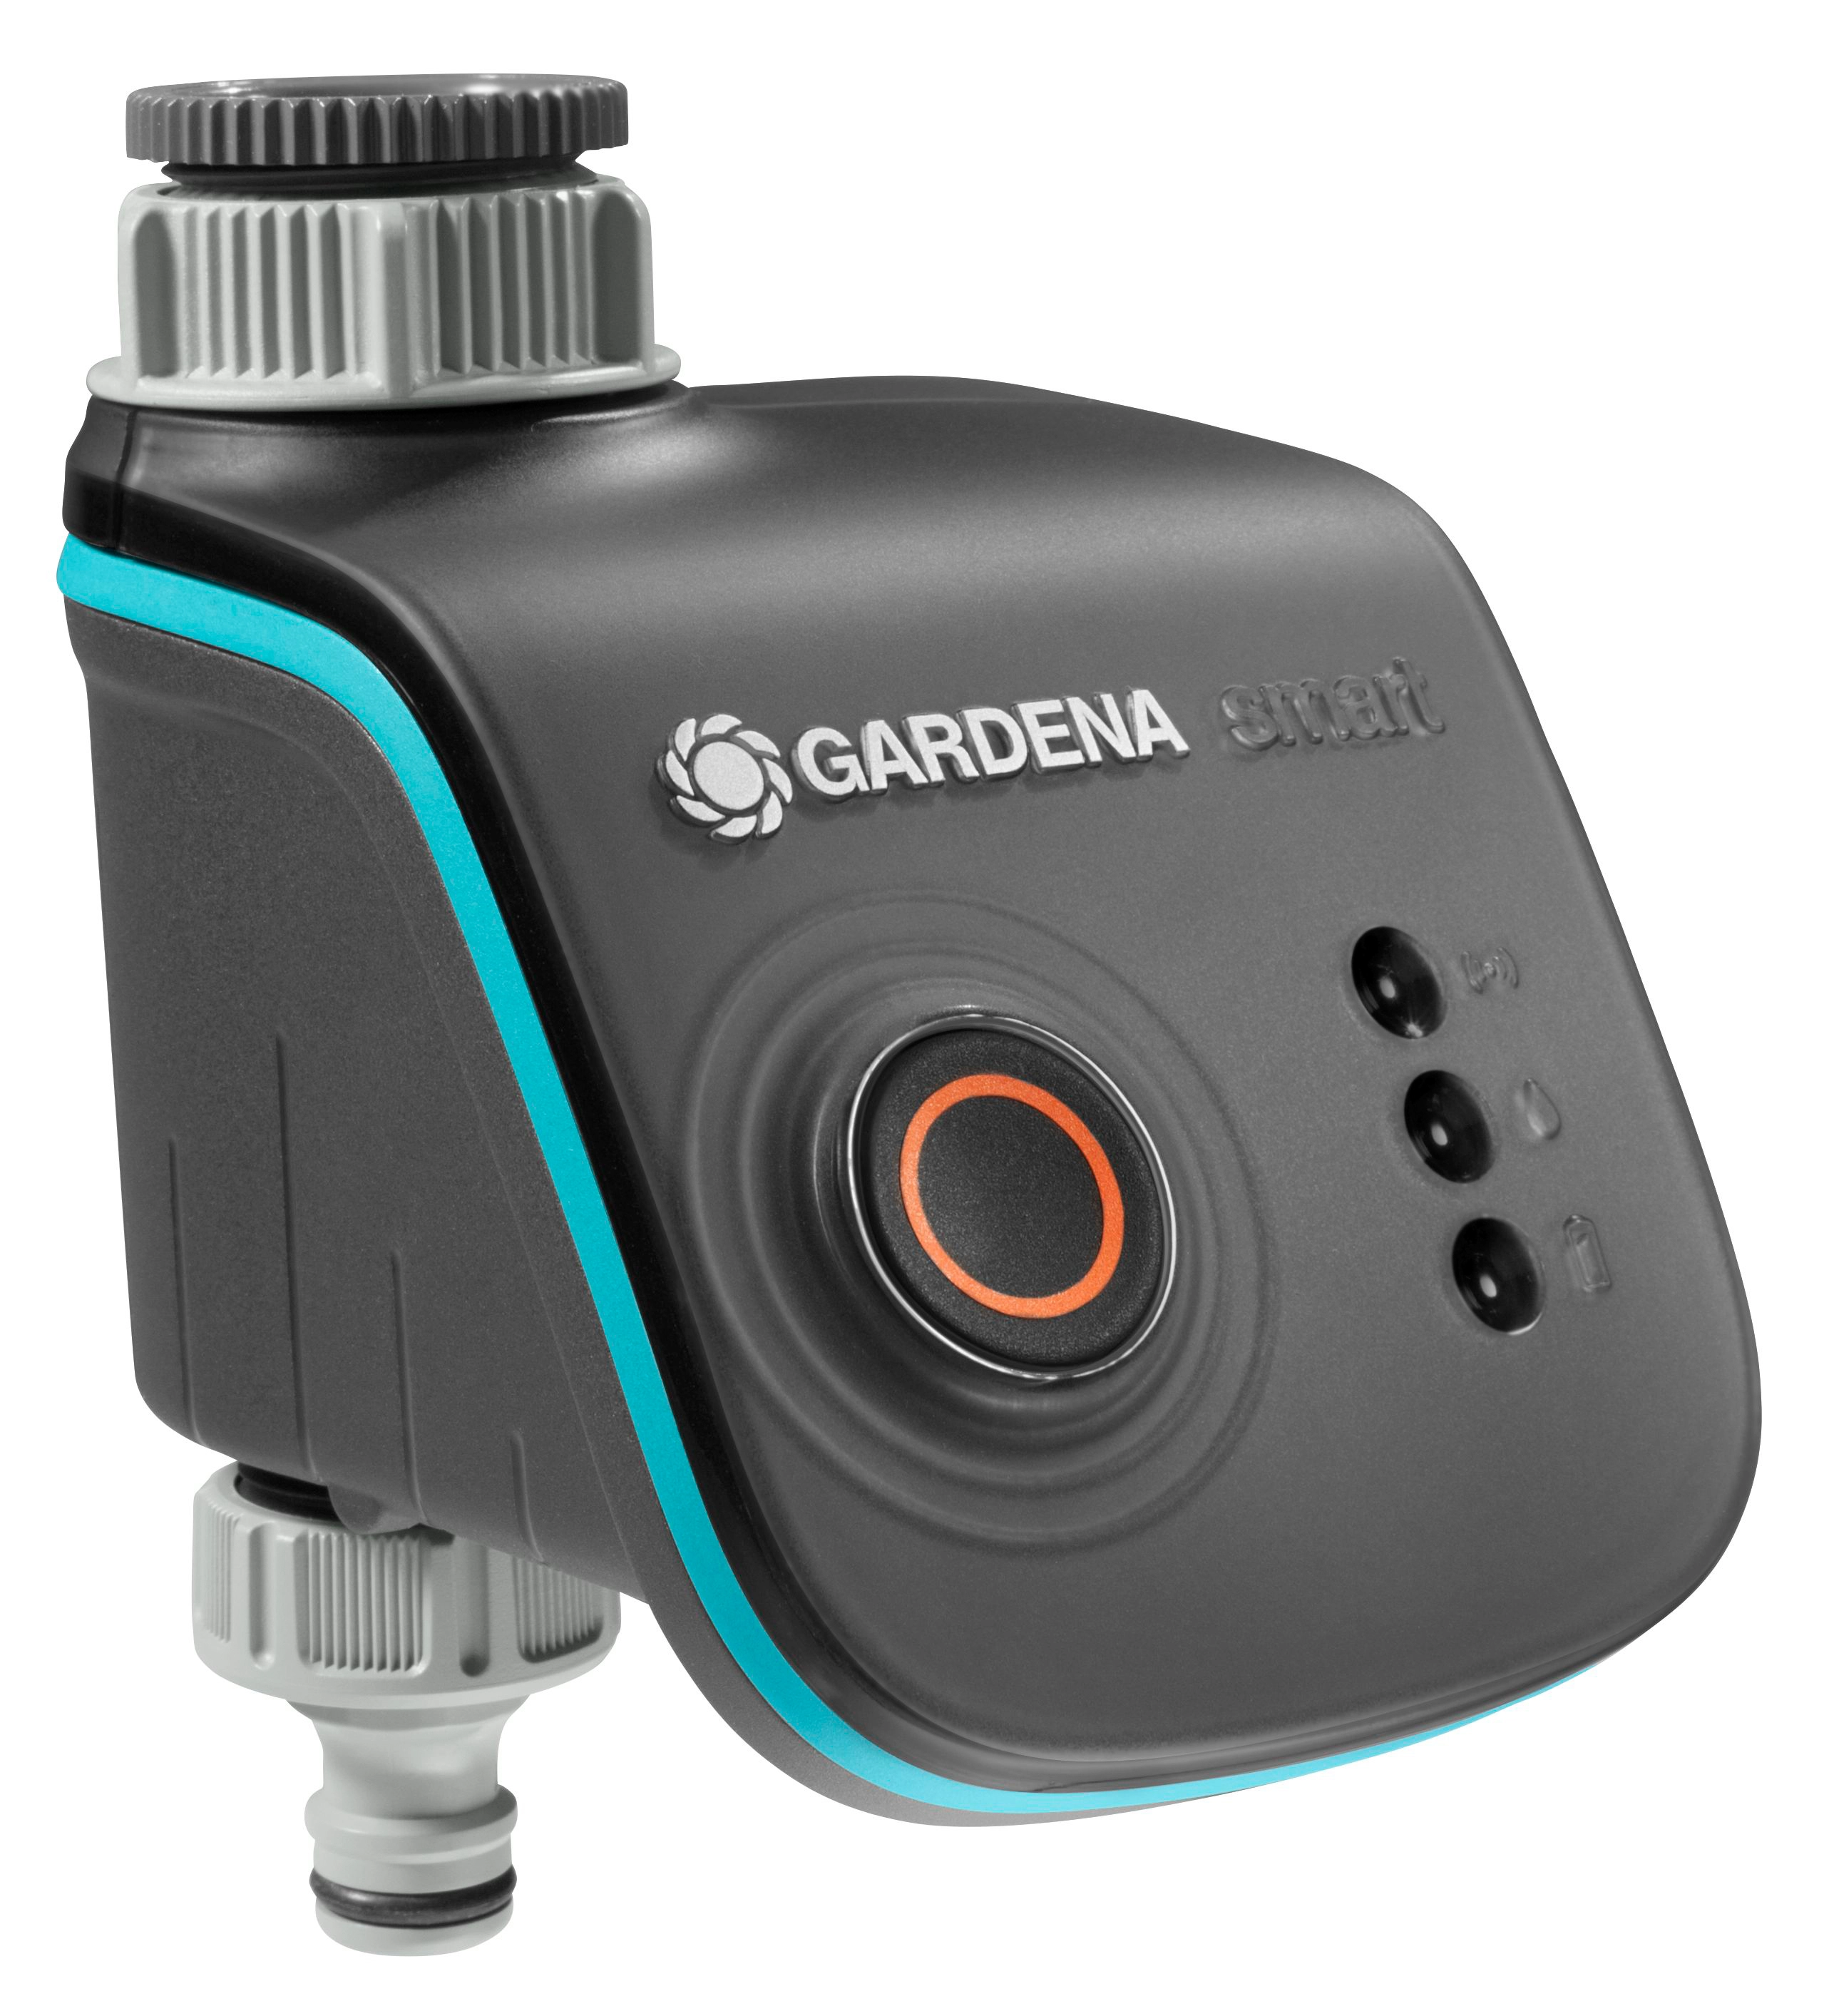 Gardena Bewässerungscomputer smart Water Control kaufen bei OBI